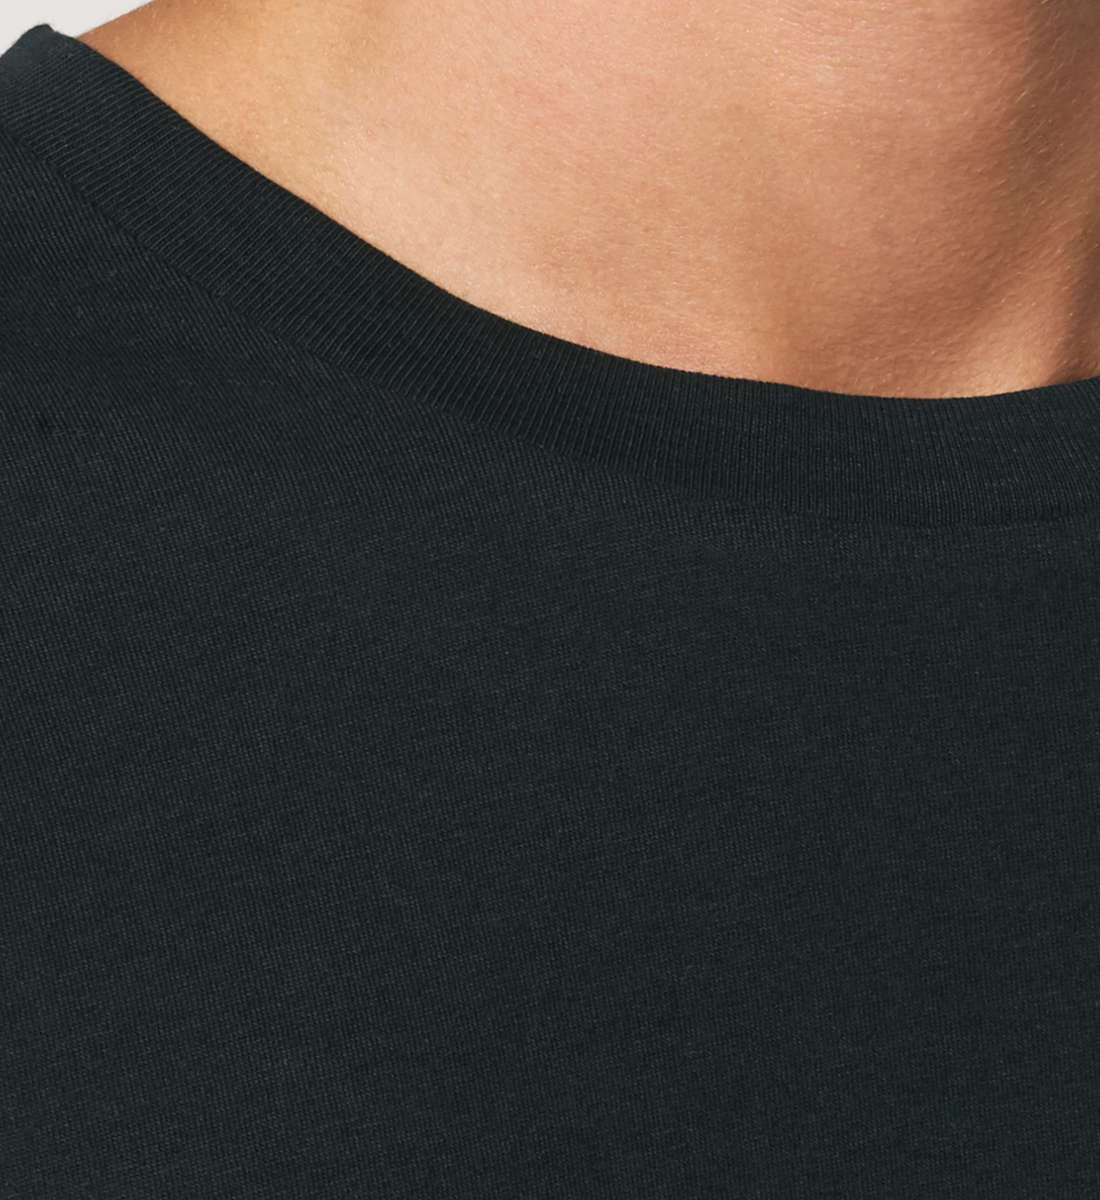 Schwarzes T-Shirt Unisex Relaxed Fit für Frauen und Männer bedruckt mit dem Design der Roger Rockawoo Kollektion Rocknroll Weekend Guitar Goddess